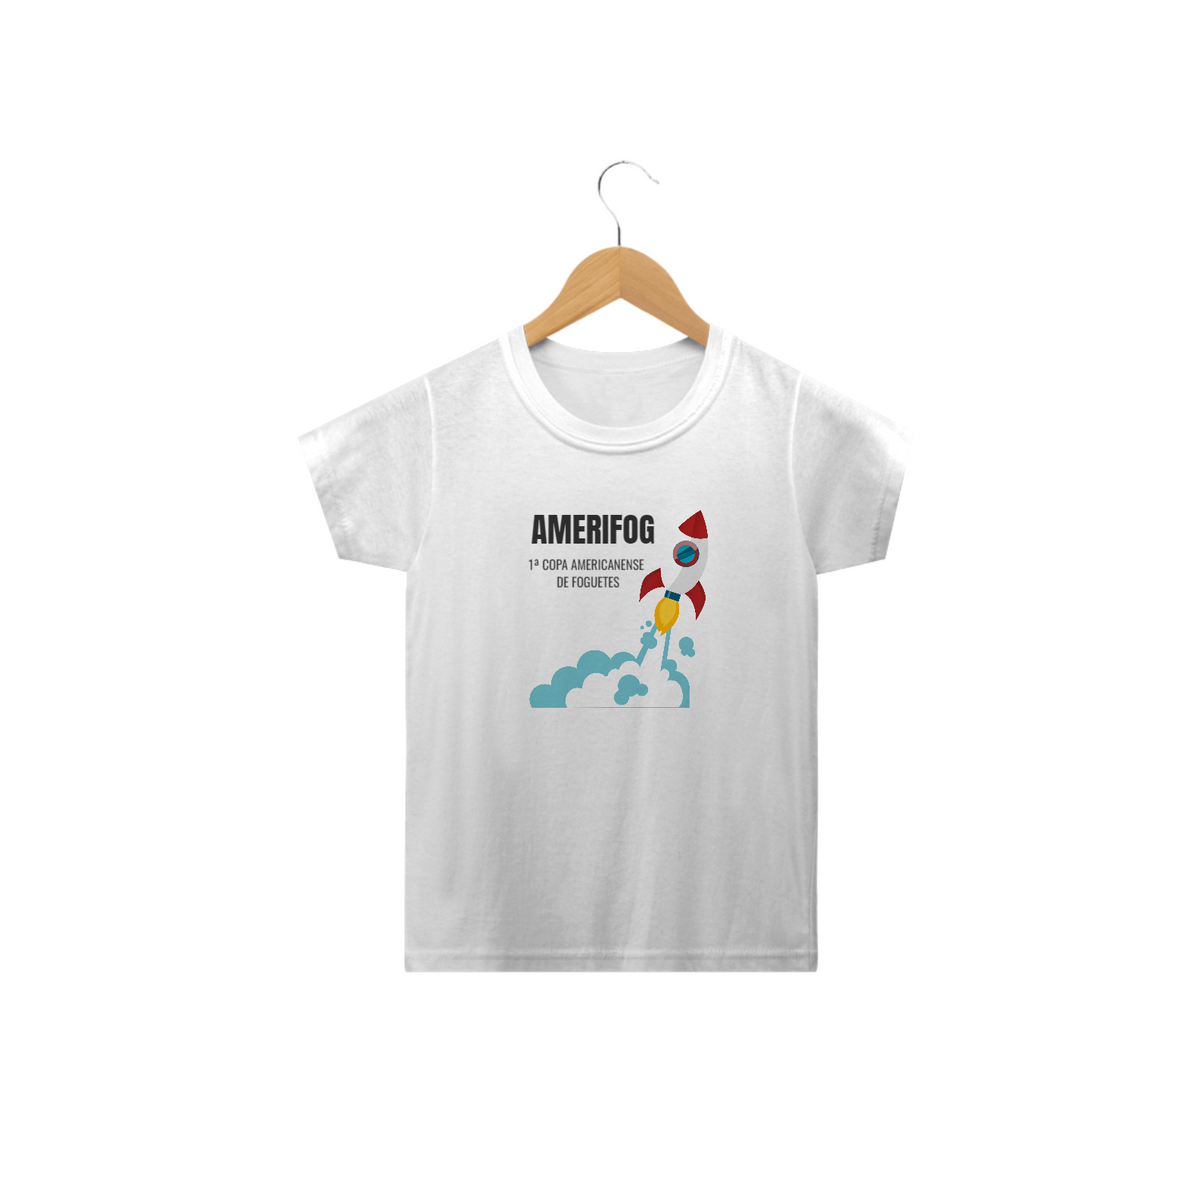 Nome do produto: Amerifog - Camisa Amerifog Infantil